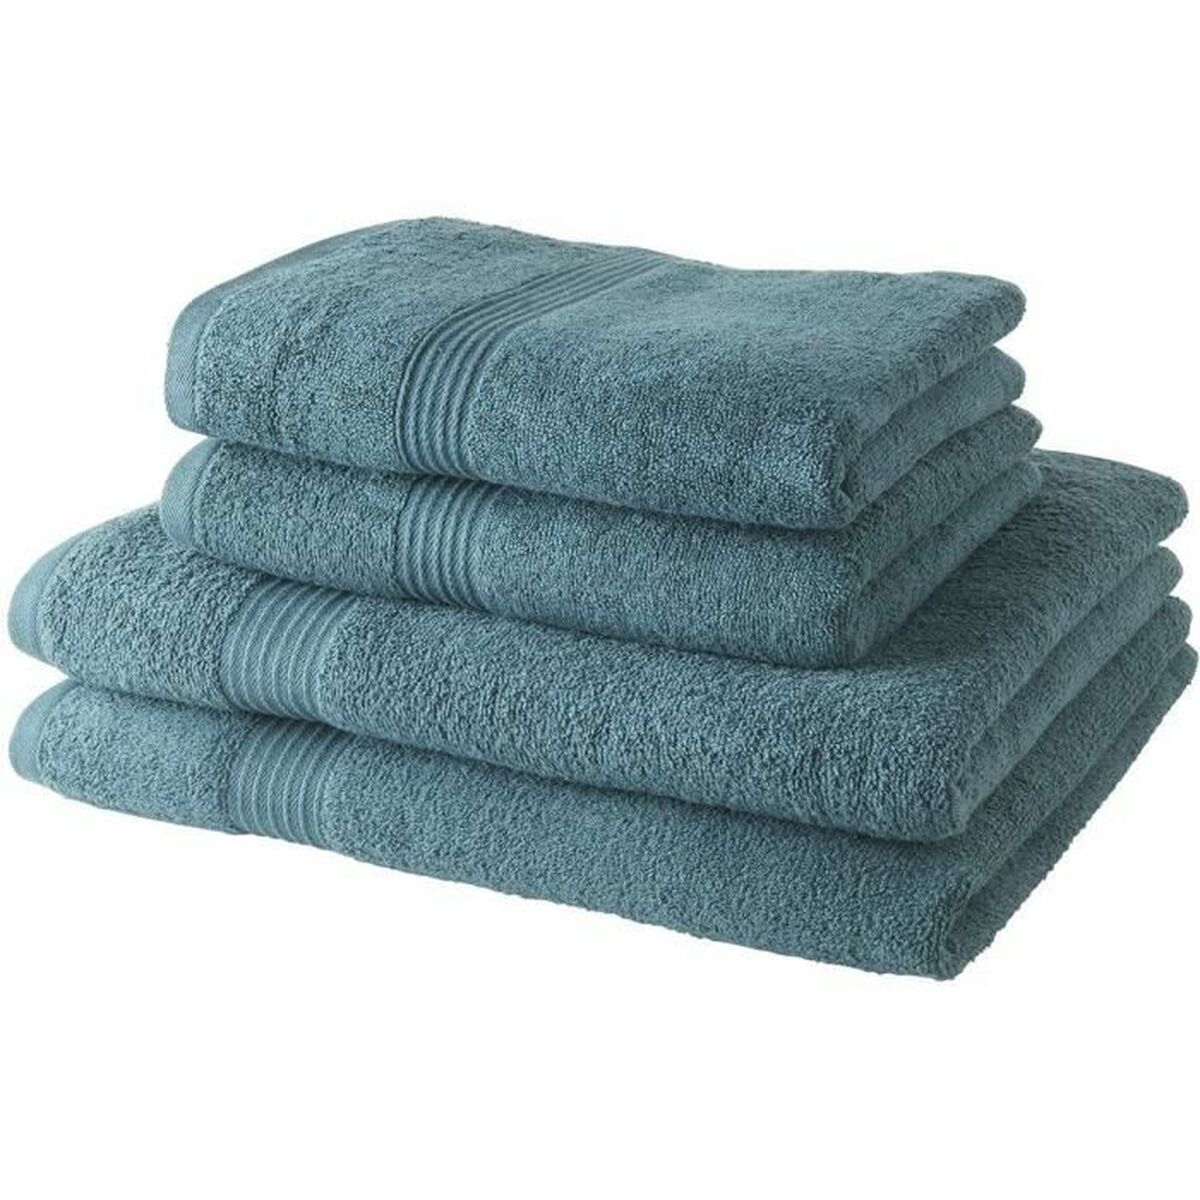 Towel set TODAY 4 Units Azul Océano